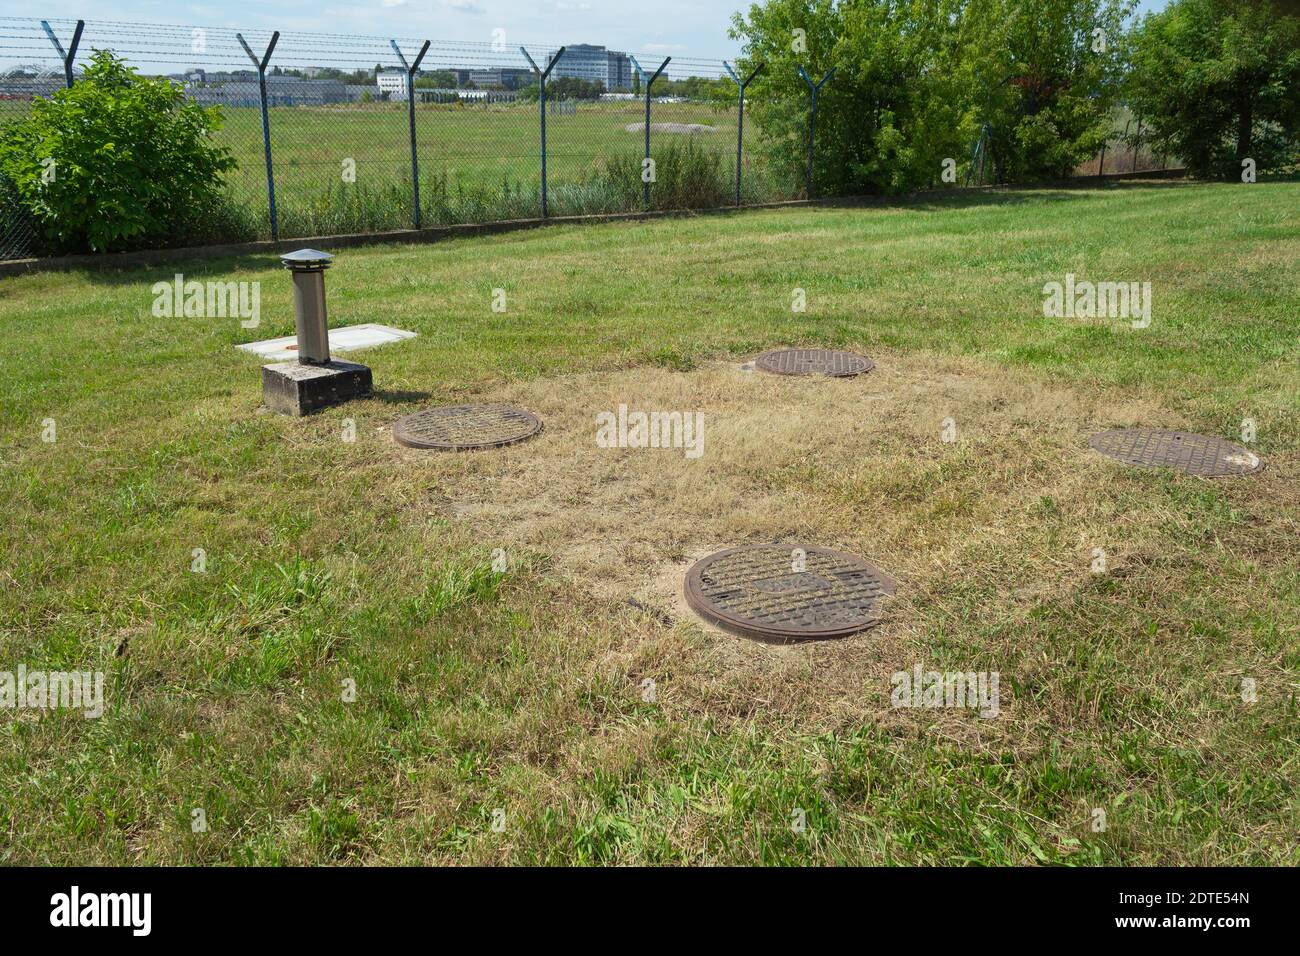 Gusseisen Kanalisation zwischen dem Gras. Metallabdeckungen für Abwasserkanäle an einem großen Verteiler Stockfoto